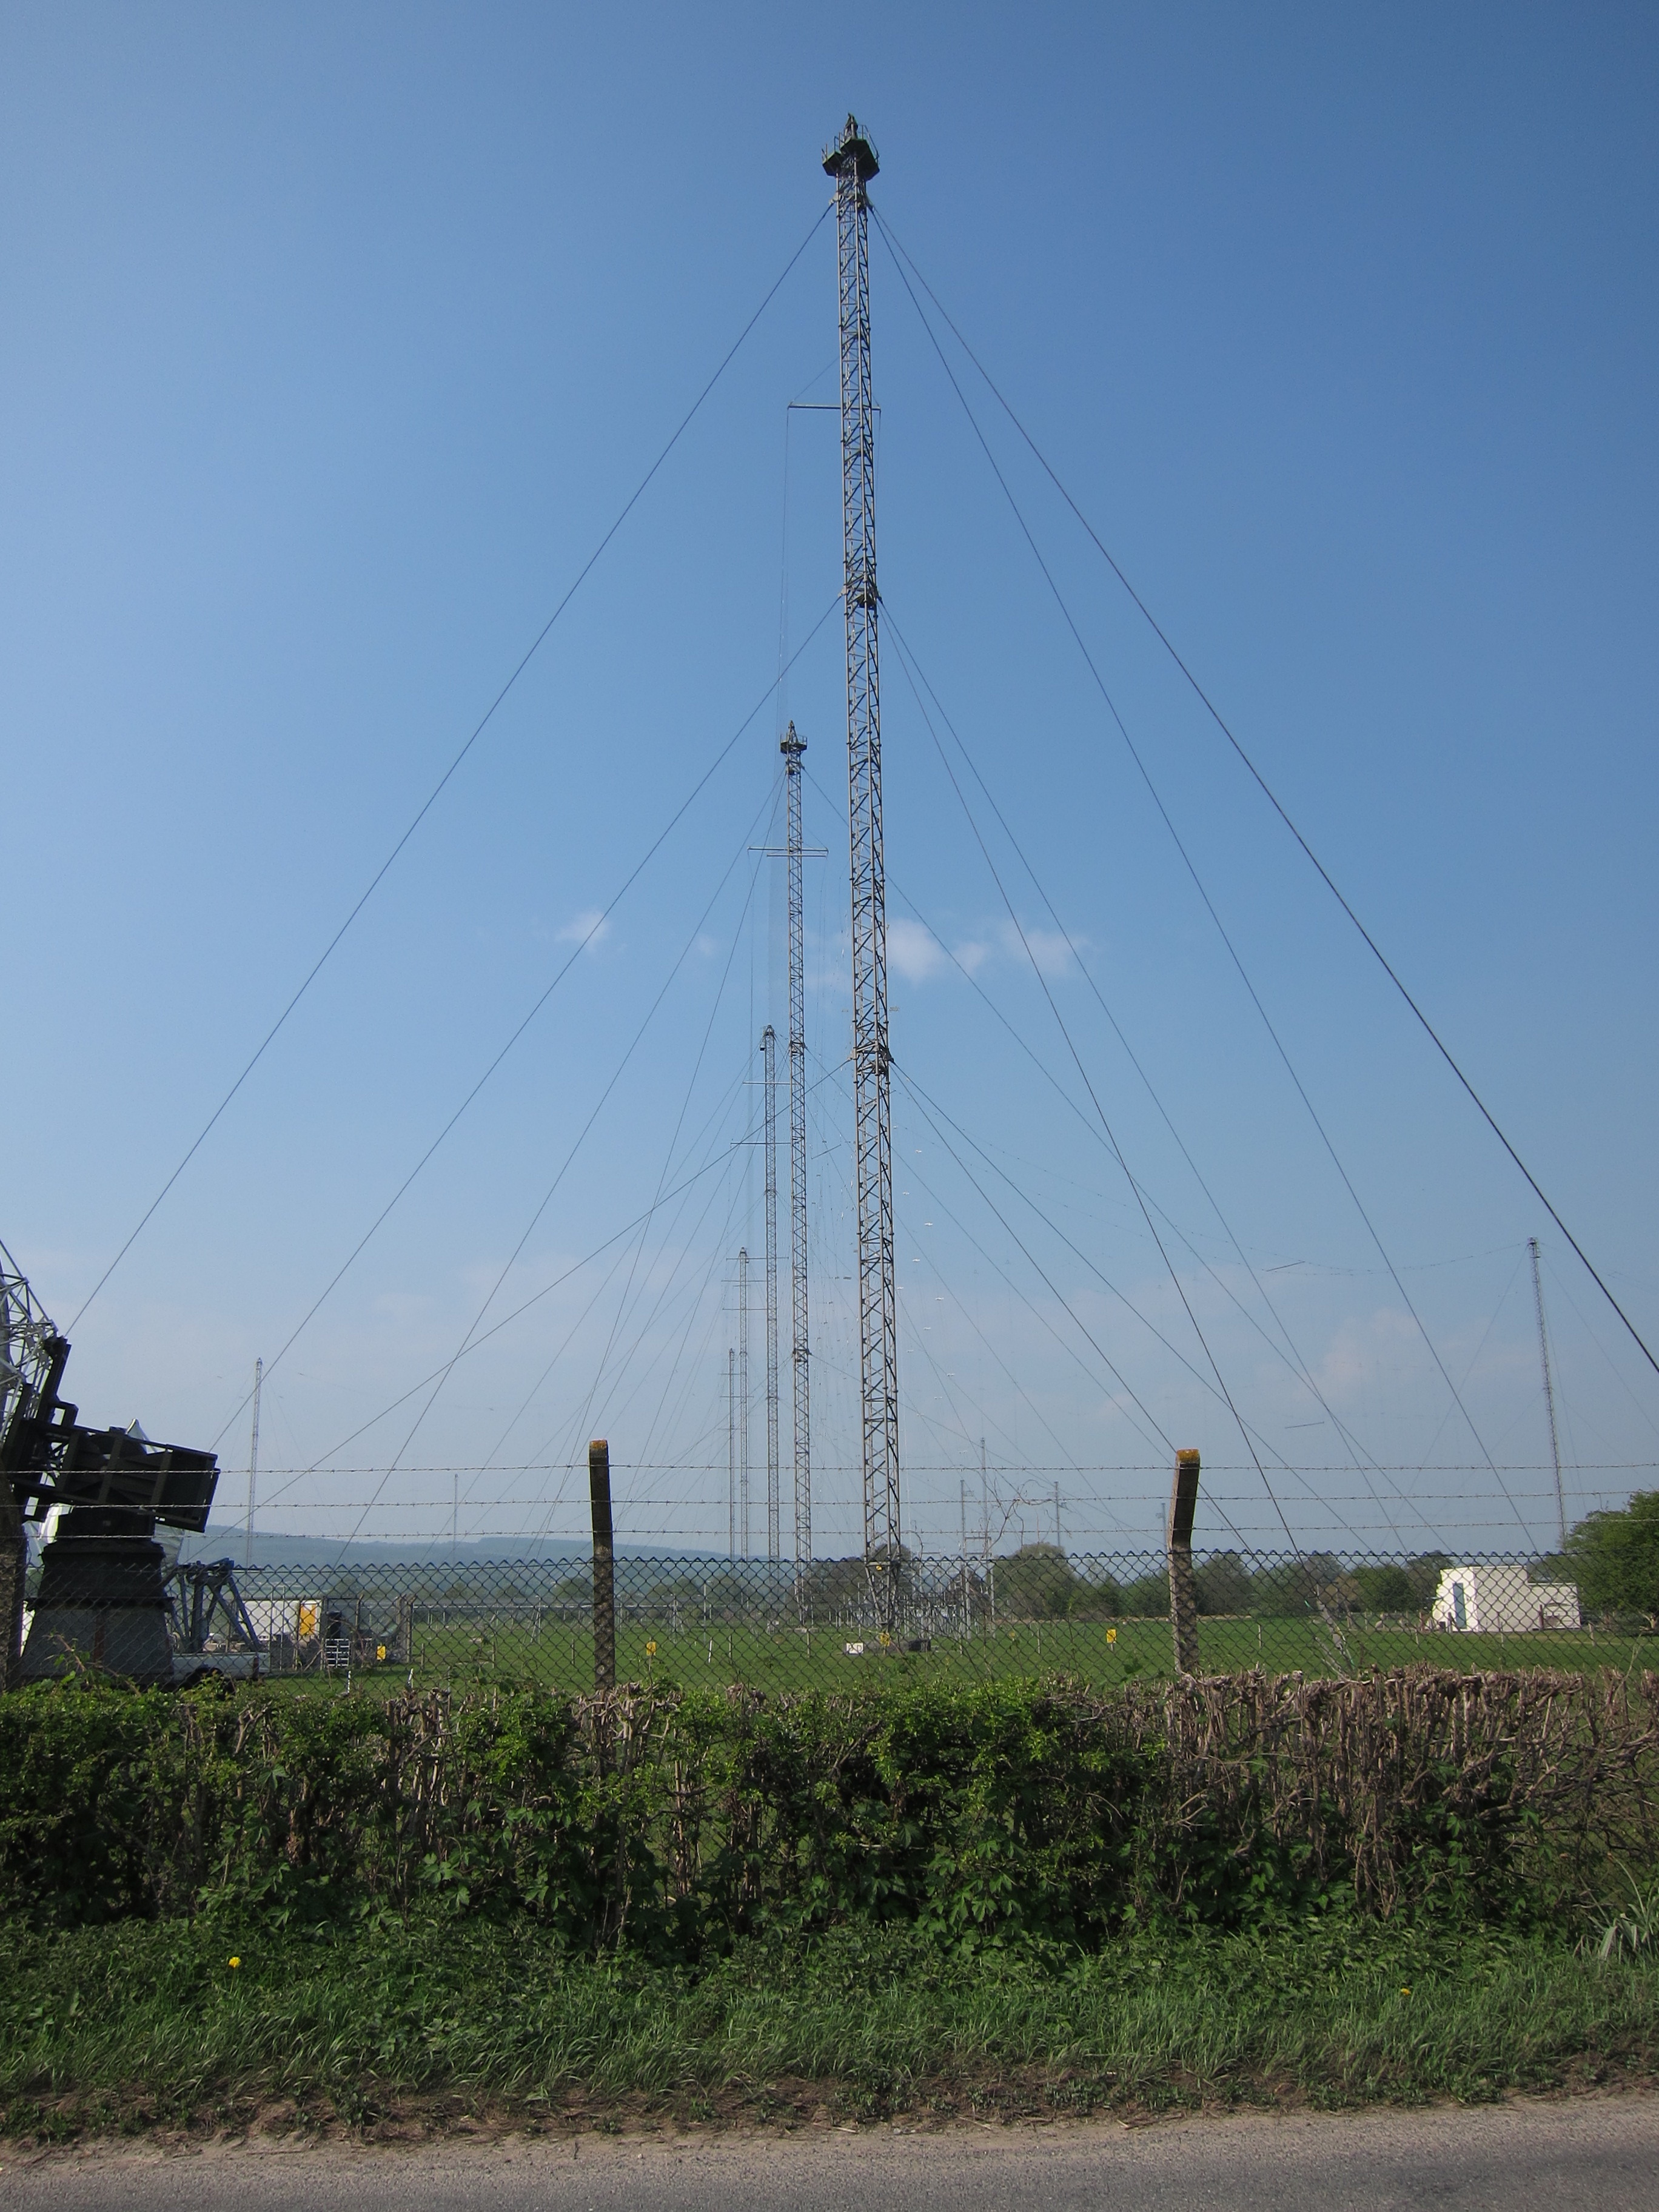 Woofferton transmitting station